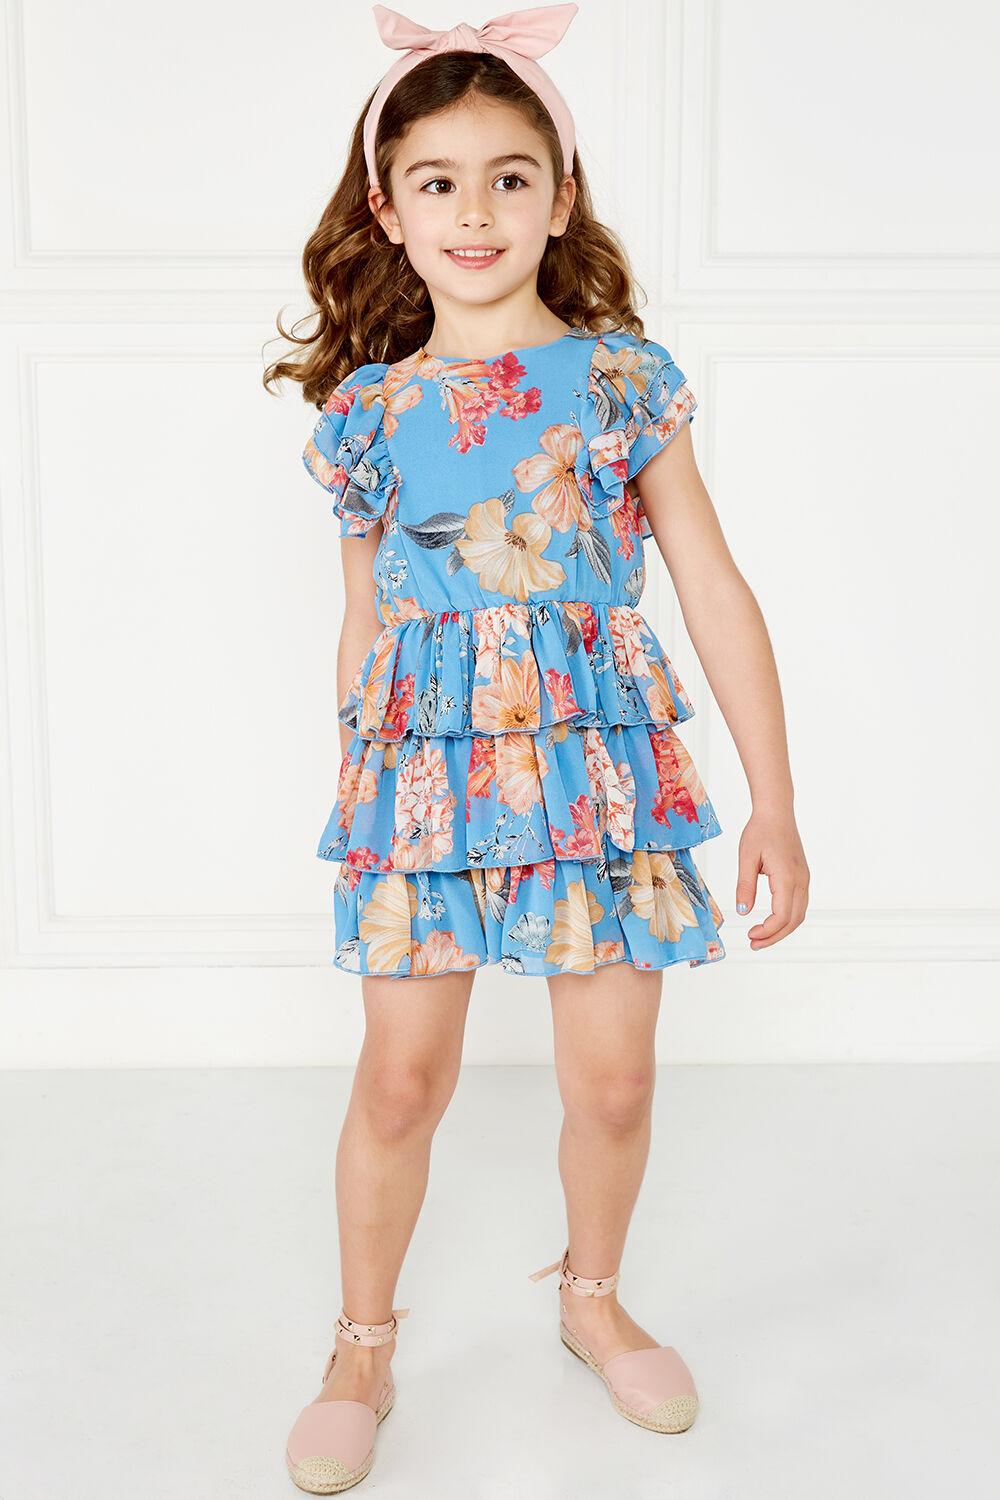 Beverly Tier Dress | Junior Girls 2-7 Dresses | Bardot Junior